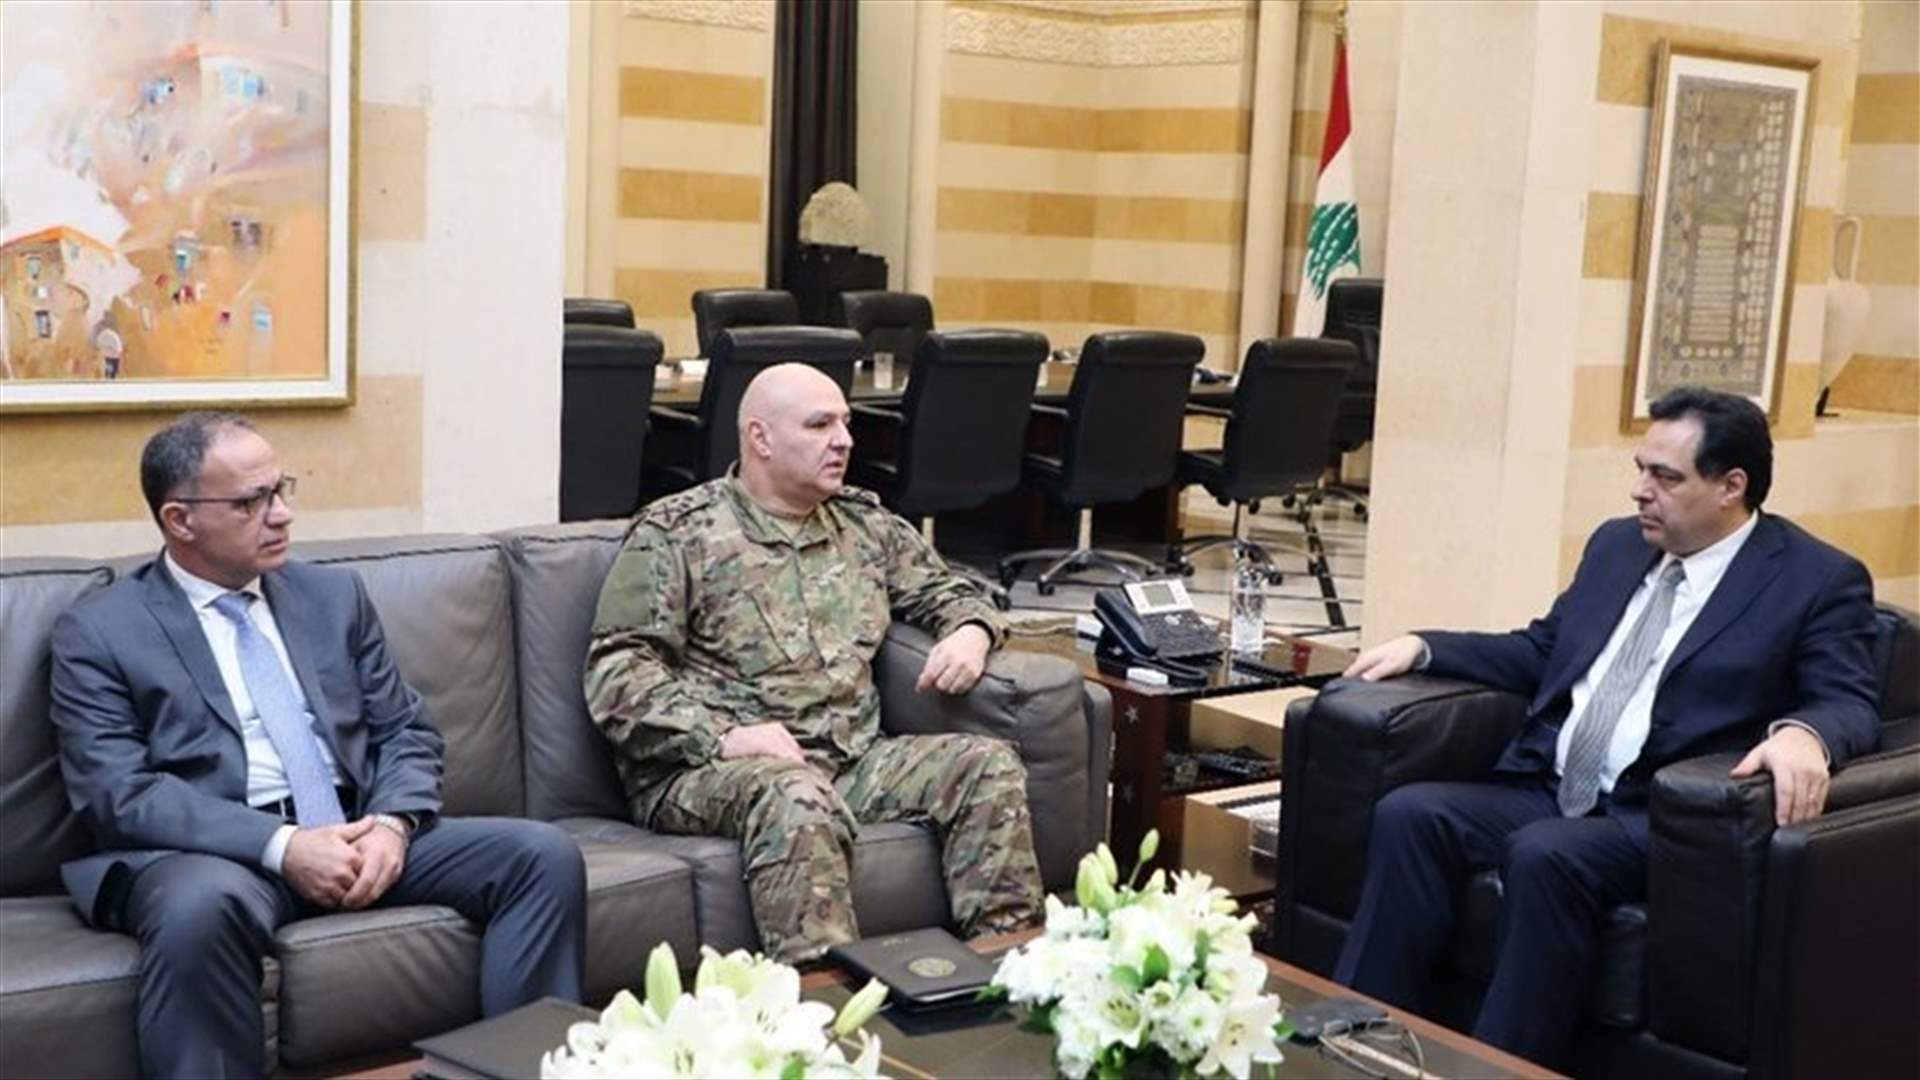 PM Diab meets Lebanese army Commander Aoun